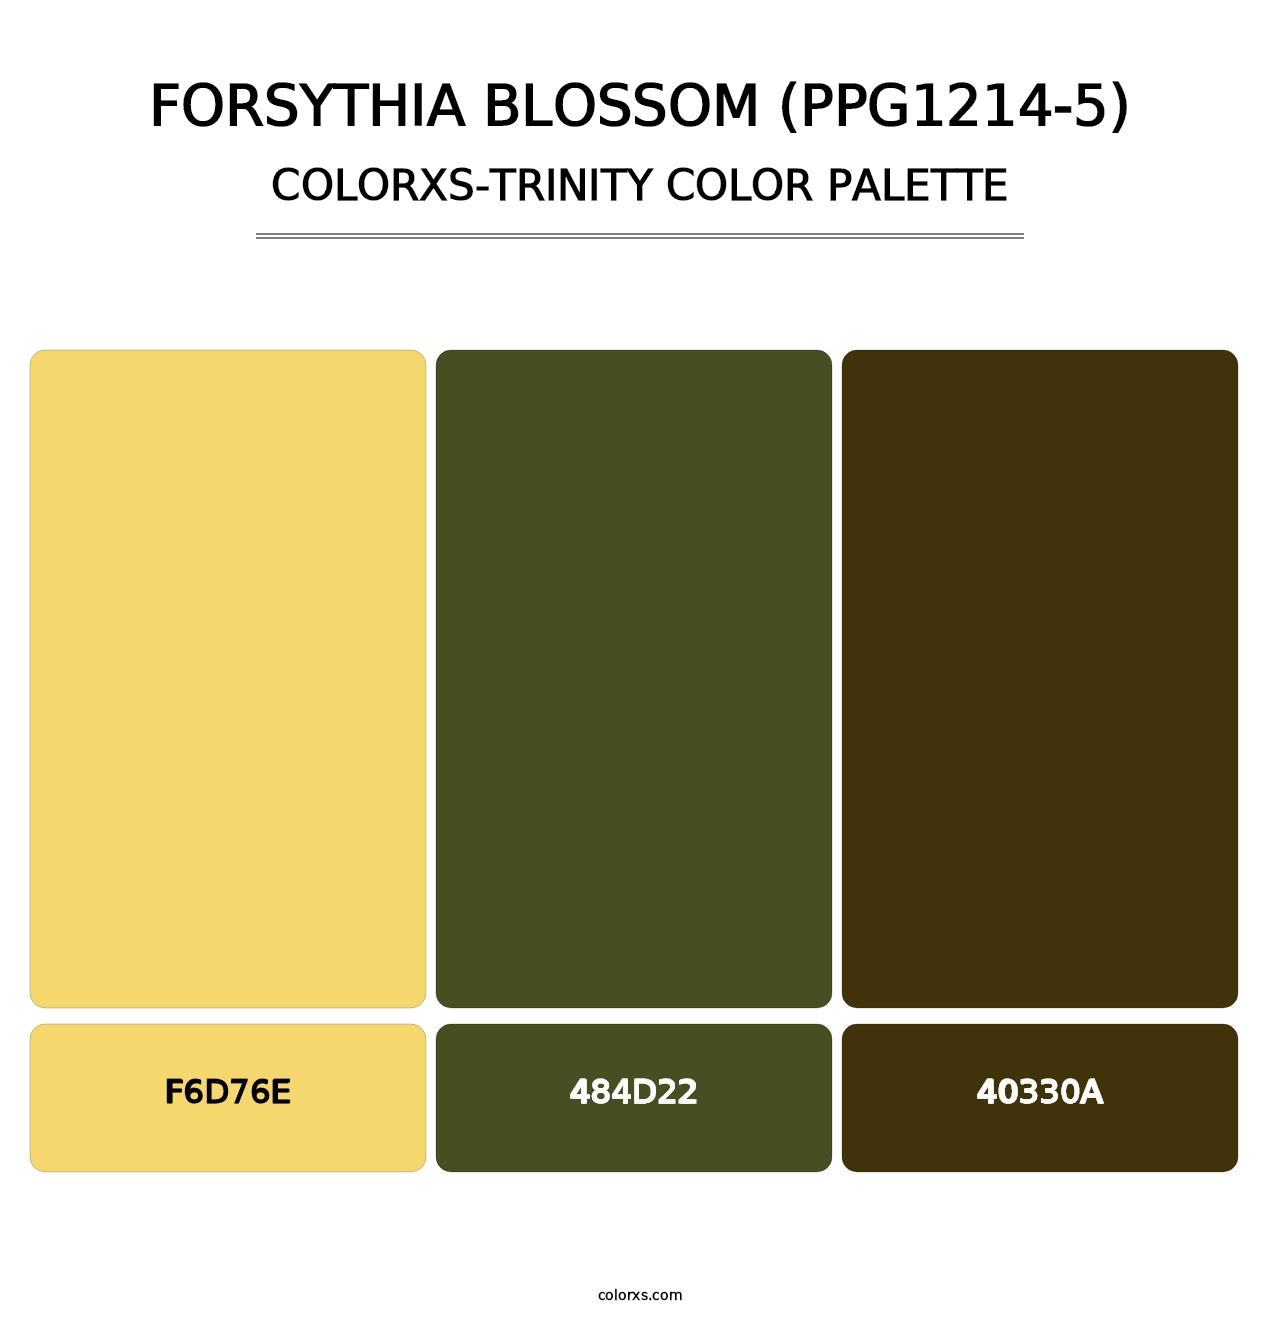 Forsythia Blossom (PPG1214-5) - Colorxs Trinity Palette